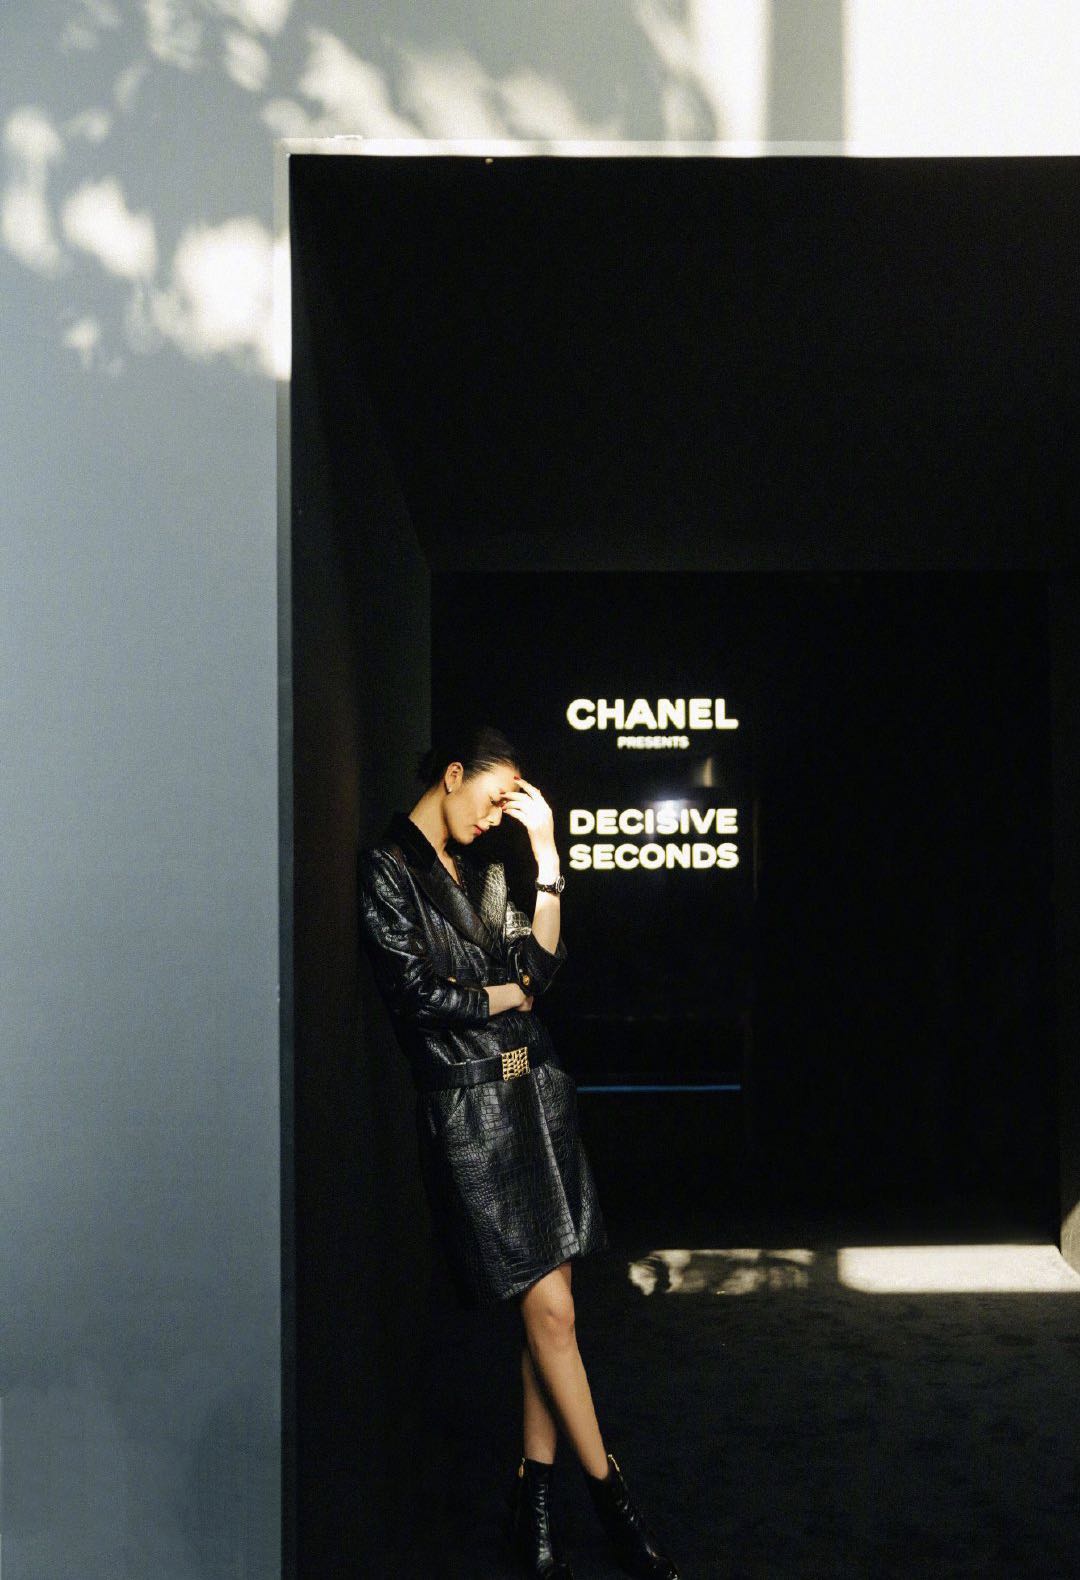 Chanel-The New J12 Decisive Seconds-Beijing-2019-June-03